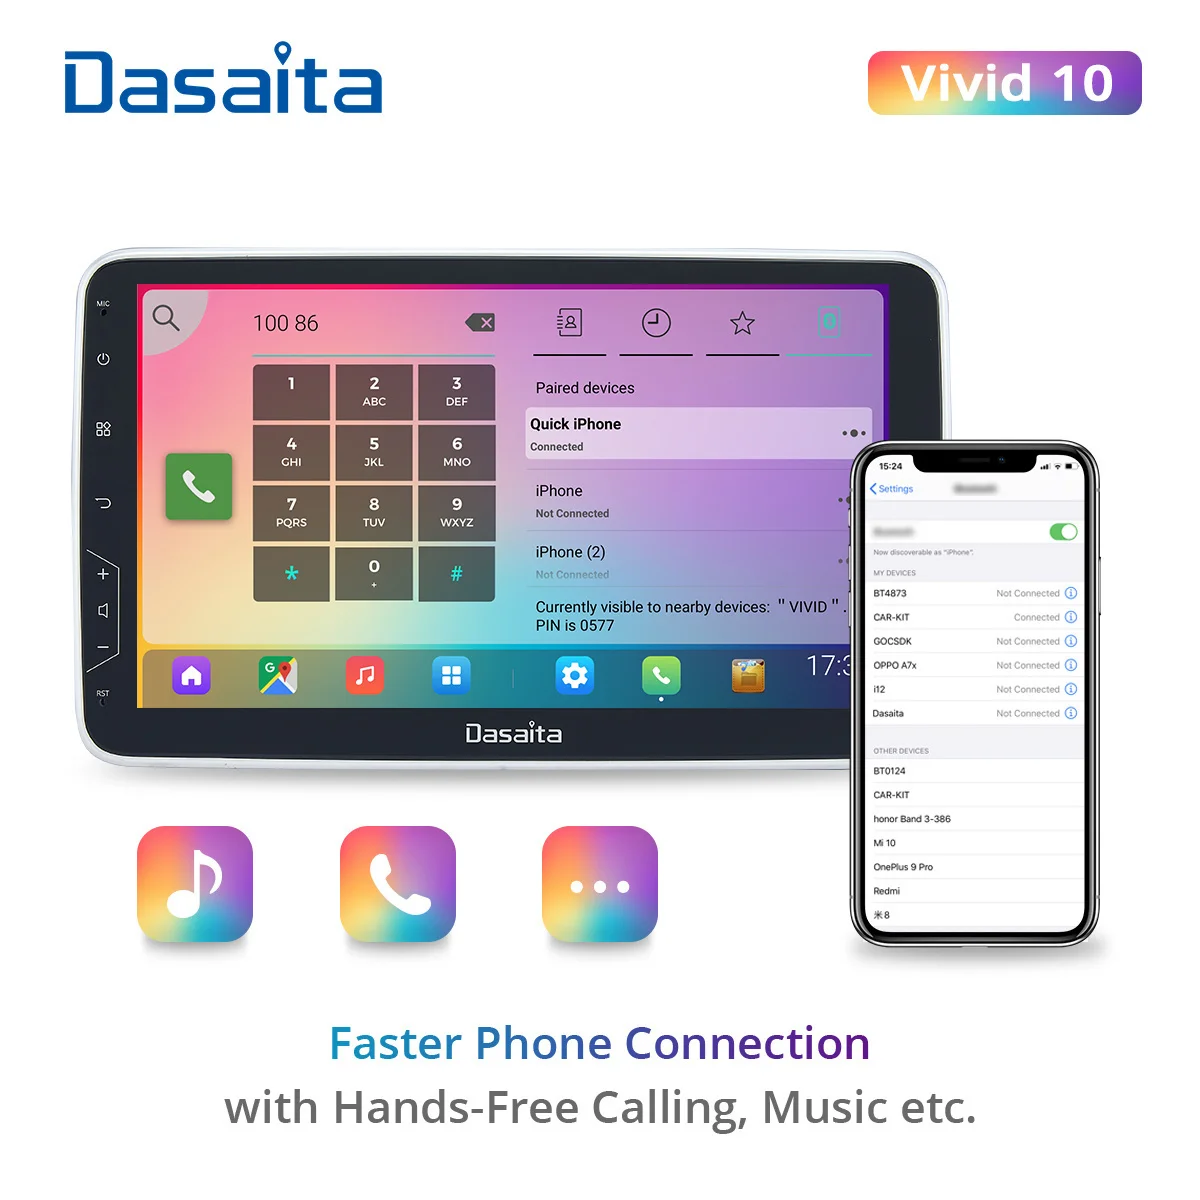 Dasaita Živé autorádia 2 Din Android hrať Auto stereo 10.2